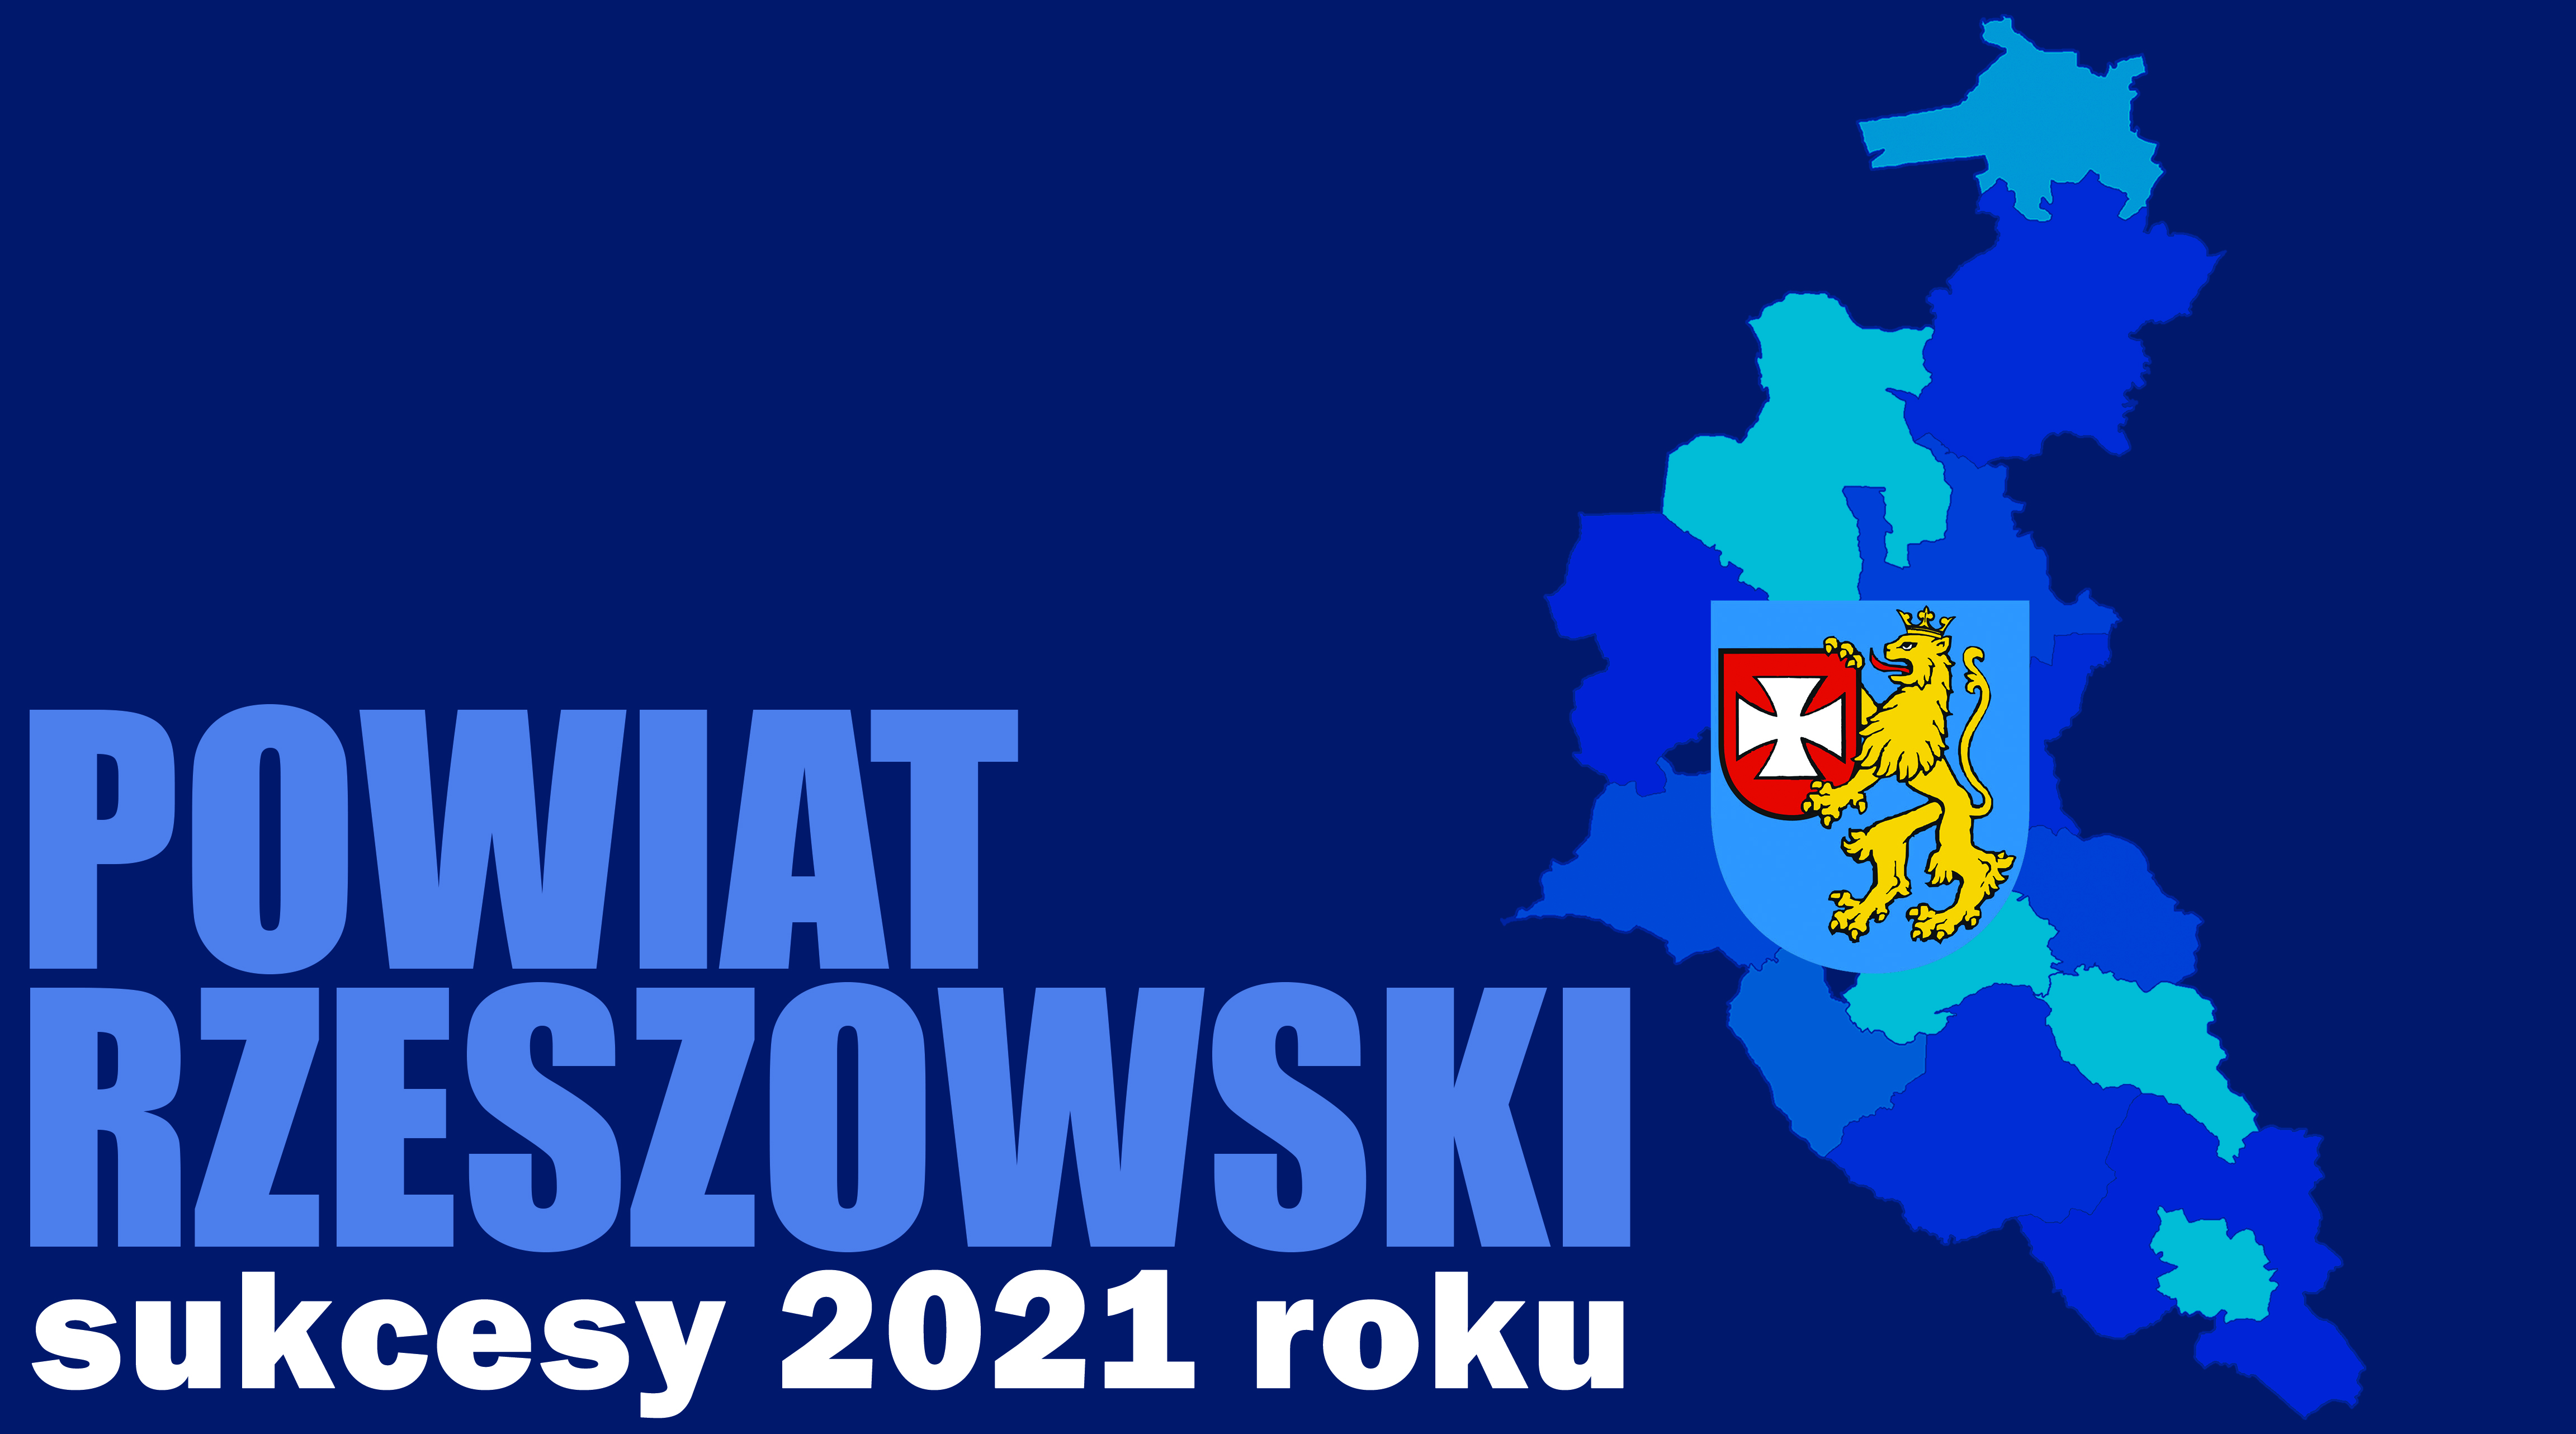 Sukcesy Powiatu Rzeszowskiego w 2021 roku